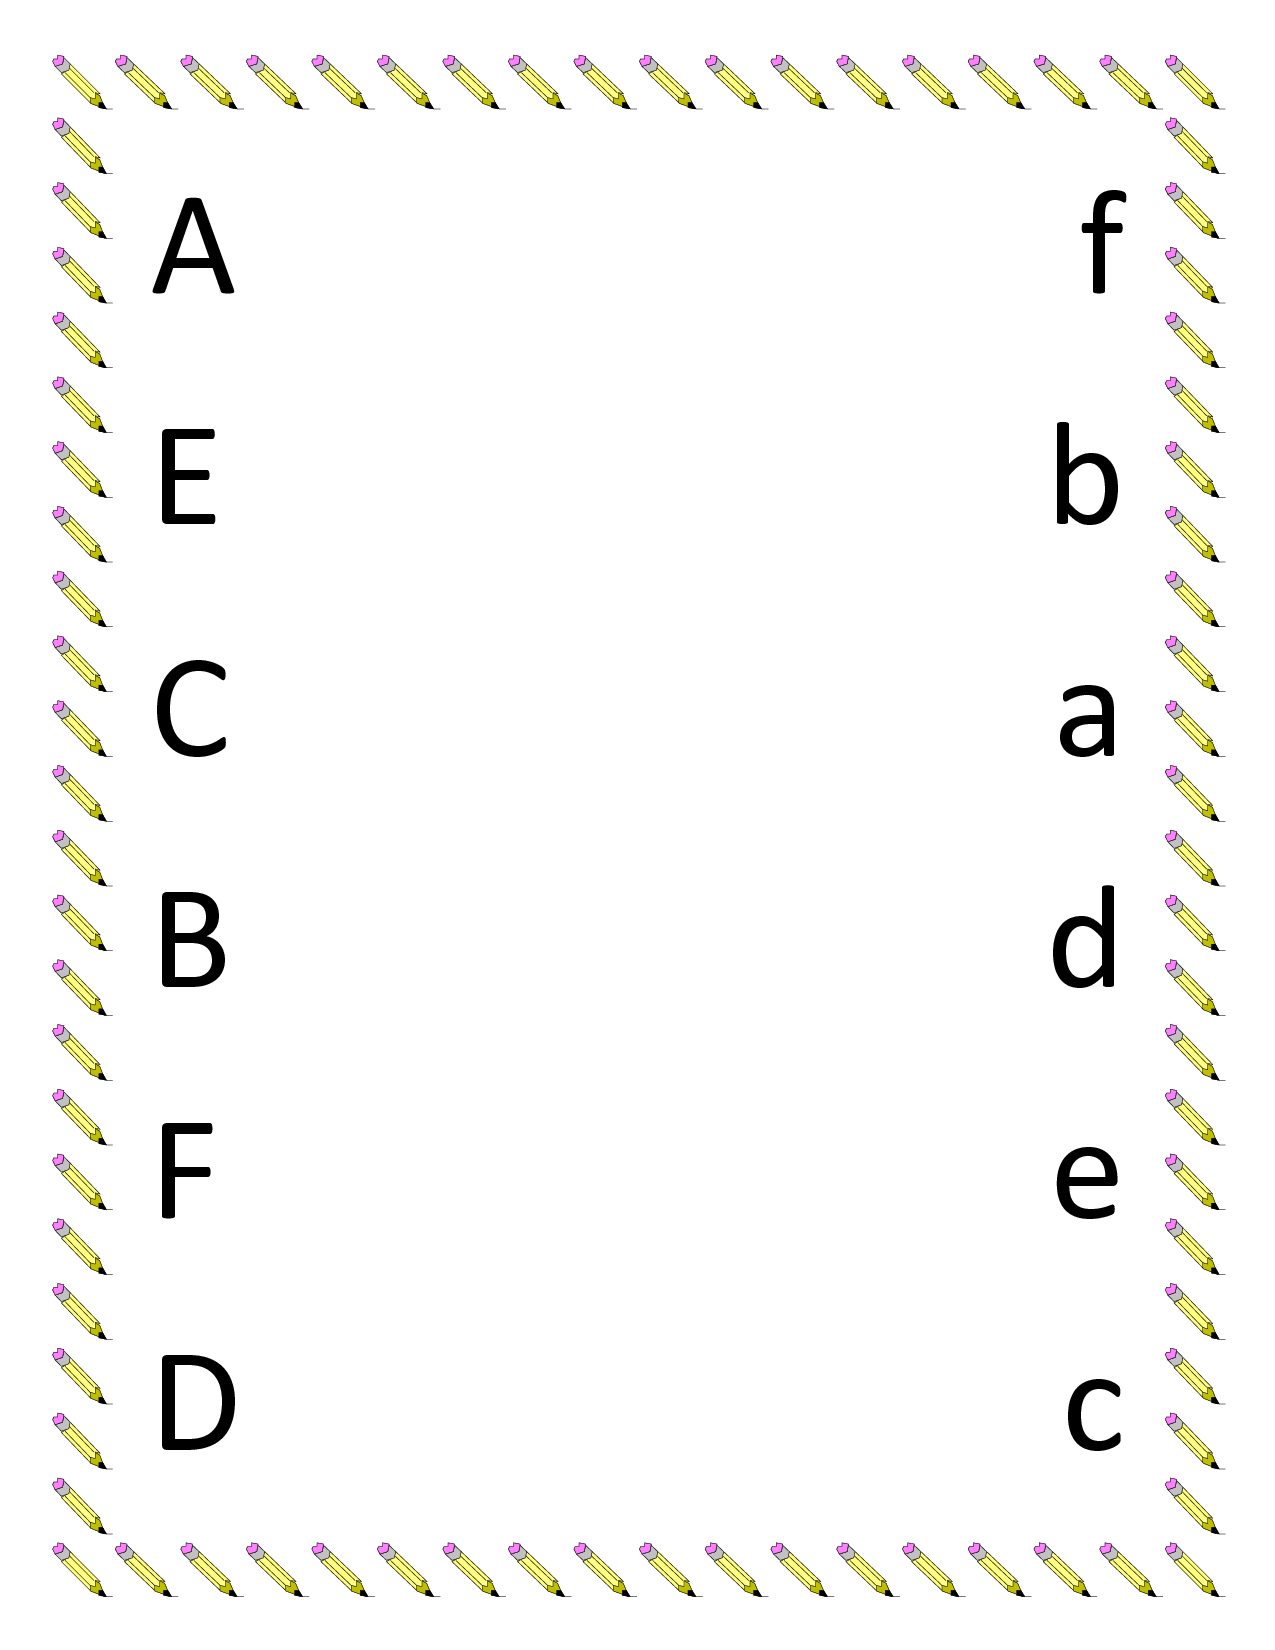 Kindergarten Worksheets | Preschool Matching Worksheets - Upper | Printable Matching Worksheets For Preschoolers